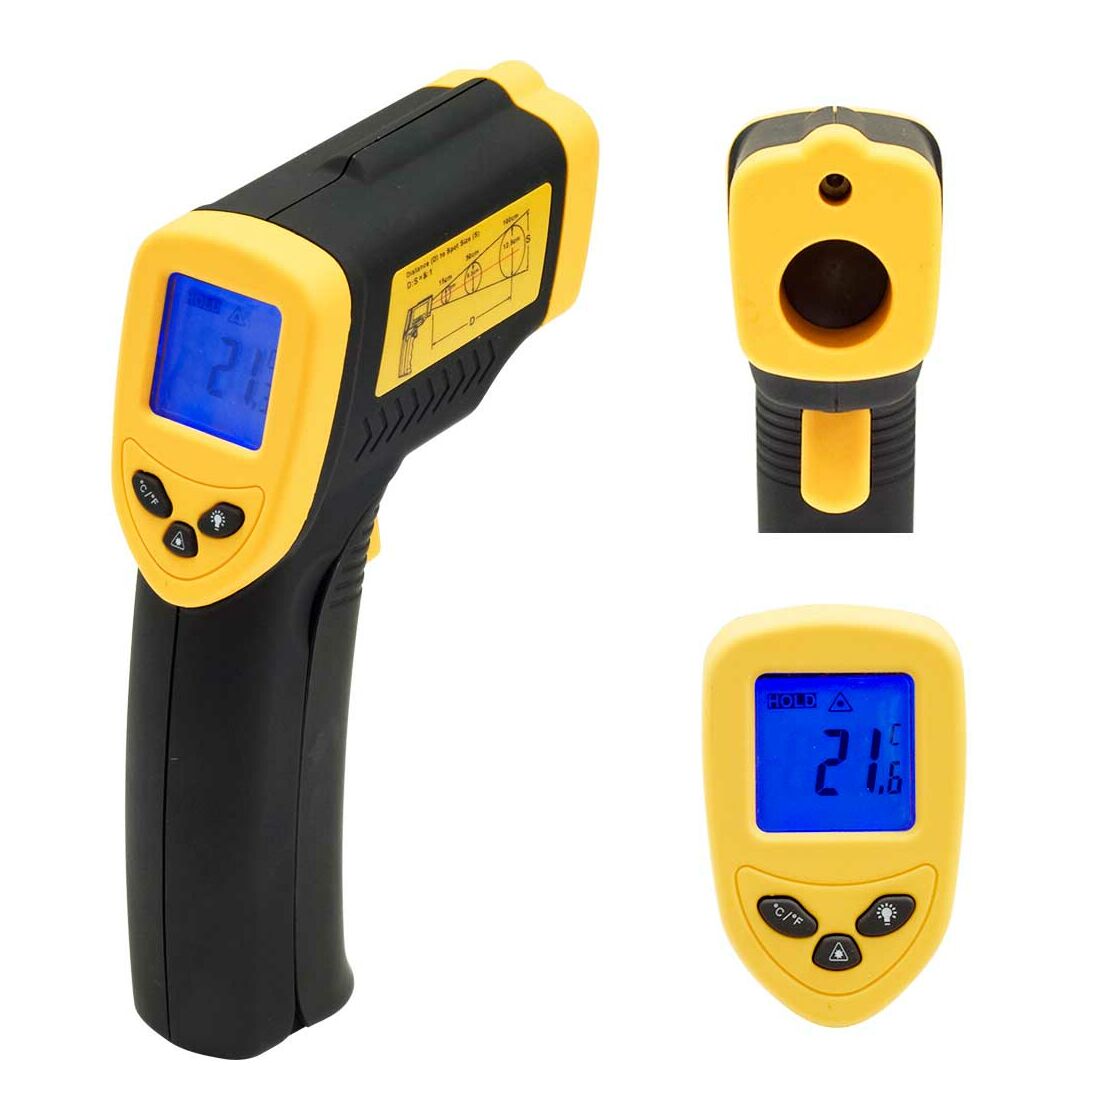 Infrarot-Thermometer mit Laserpointer -50 °C bis 380 °C, 92,32 €